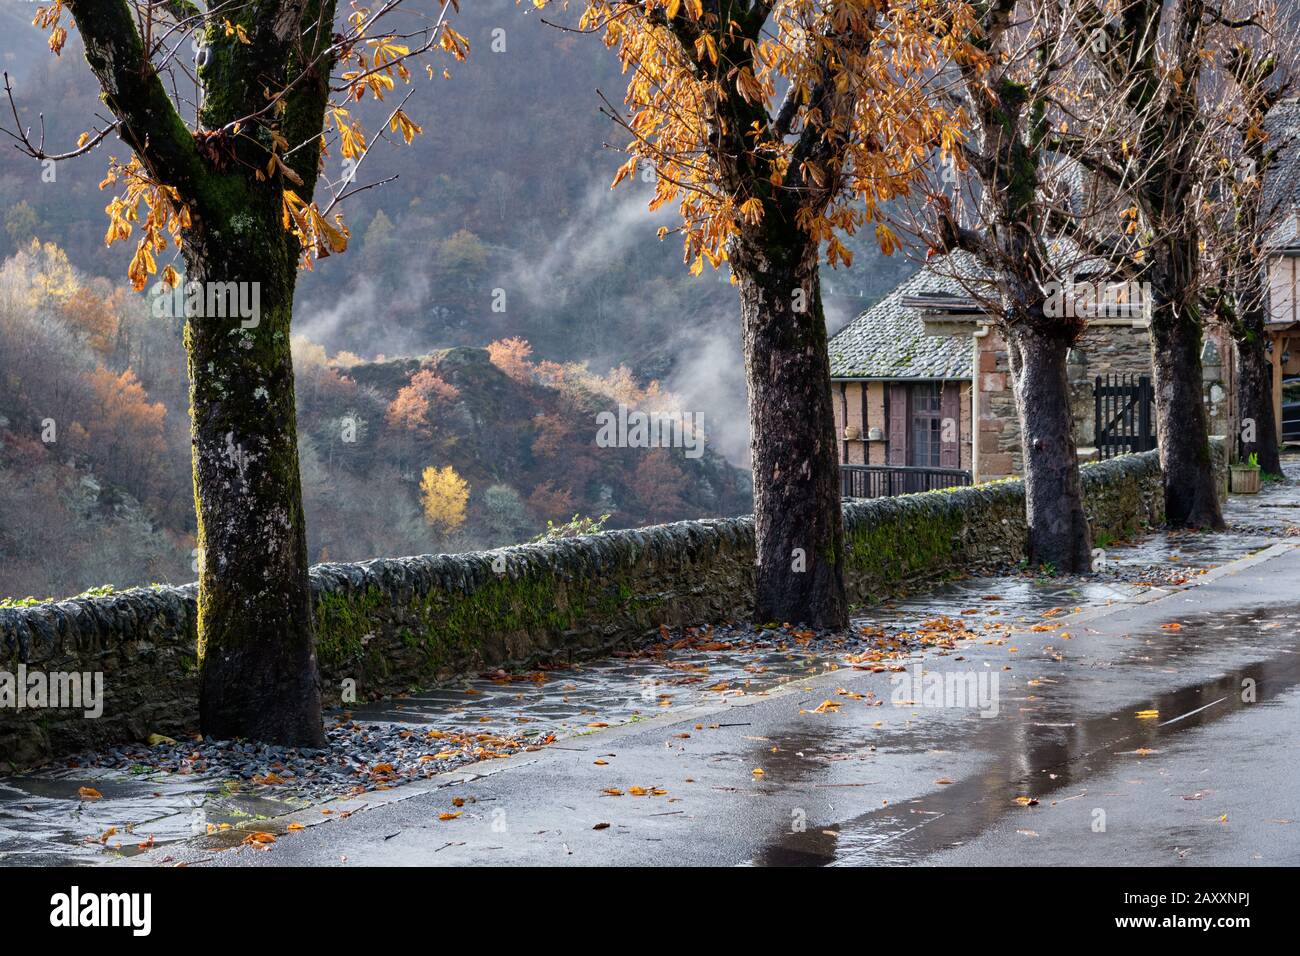 Pioggia e nebbia sul sentiero alberato lungo la strada del villaggio, sullo sfondo vestito foresta d'autunno, Conques, Francia Foto Stock